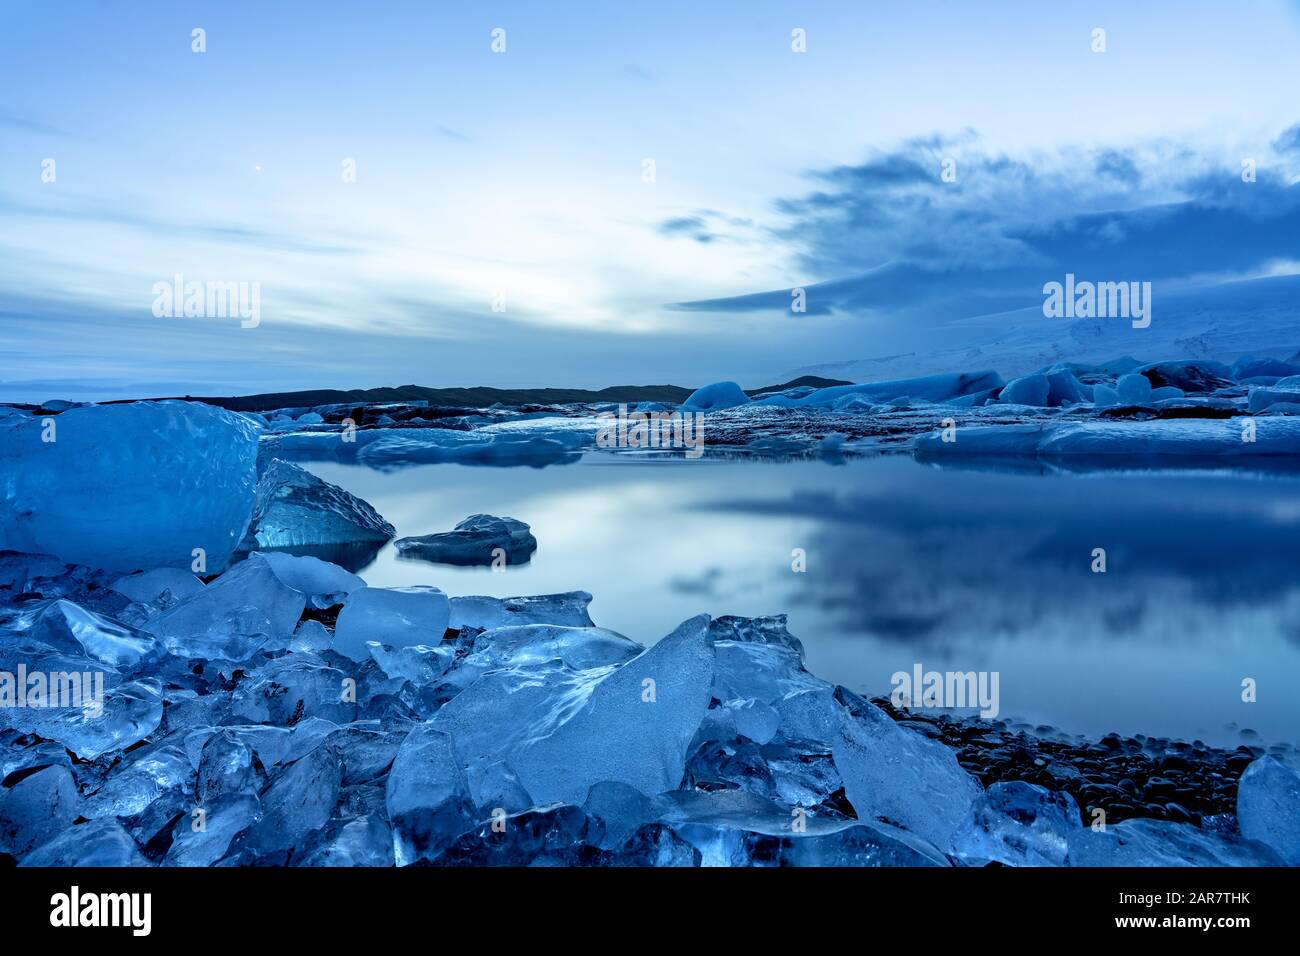 ghiacciaio dell'islanda jokulsarlon negli iceberg serali che galleggiano sull'acqua fredda e tranquilla dopo il tramonto con cielo drammatico. Foto Stock